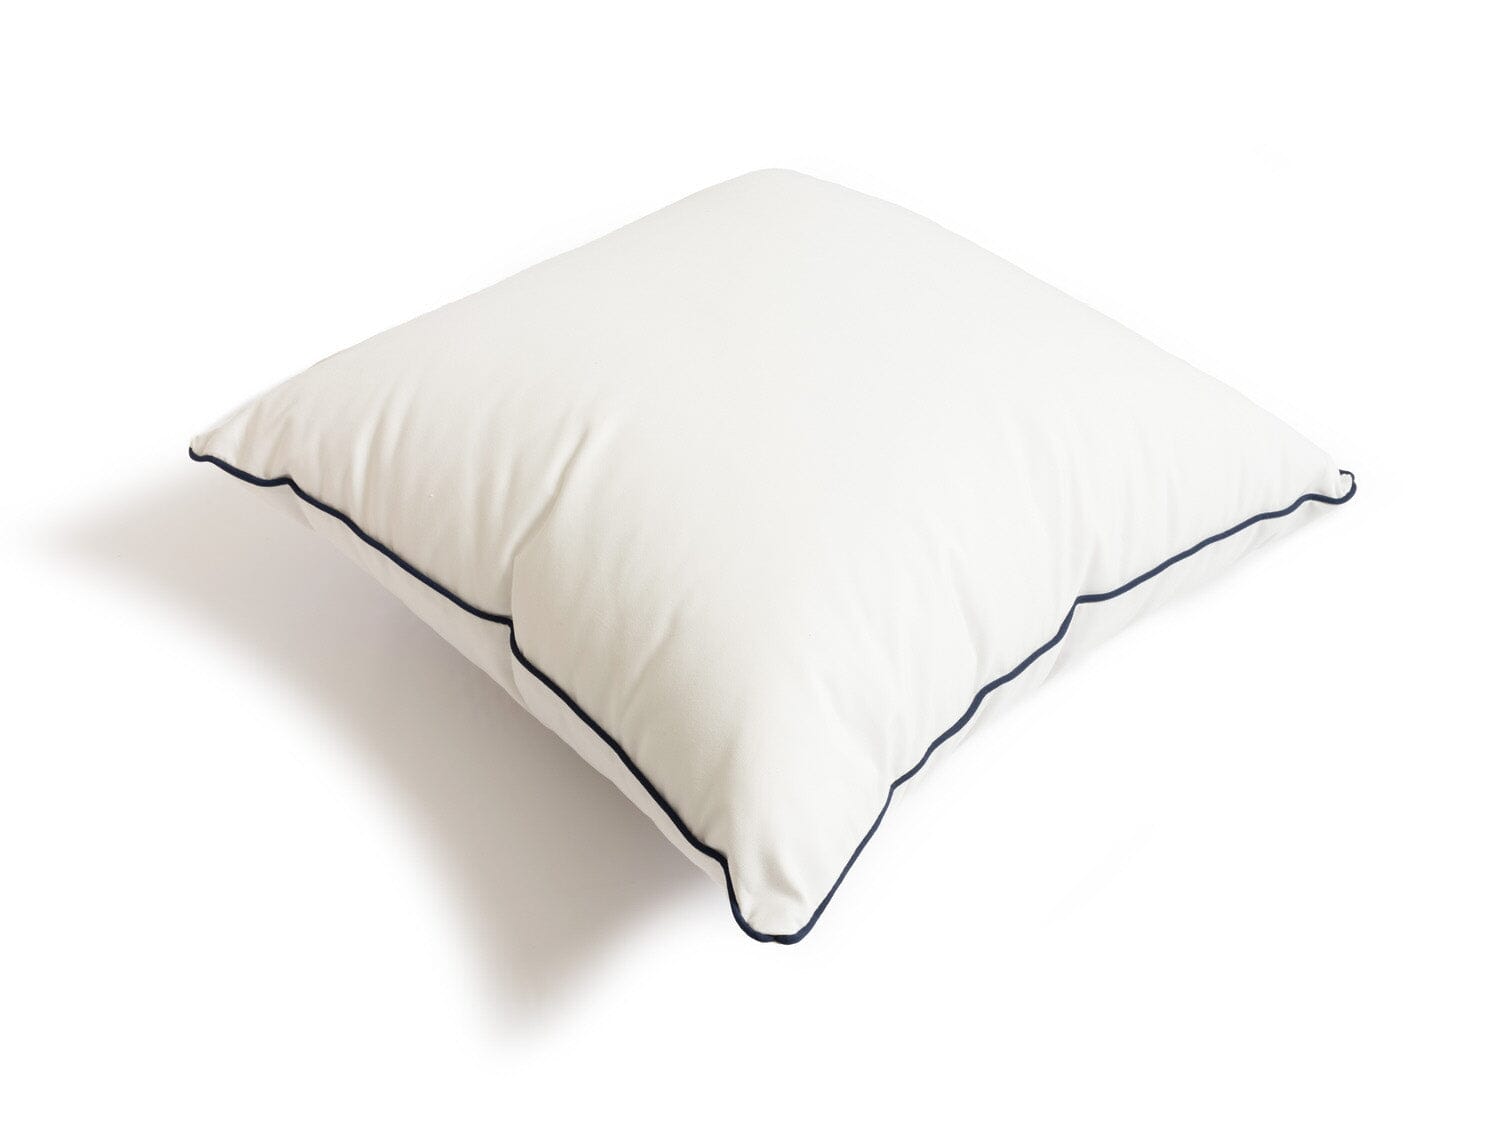 Studio image of white euro throw pillow